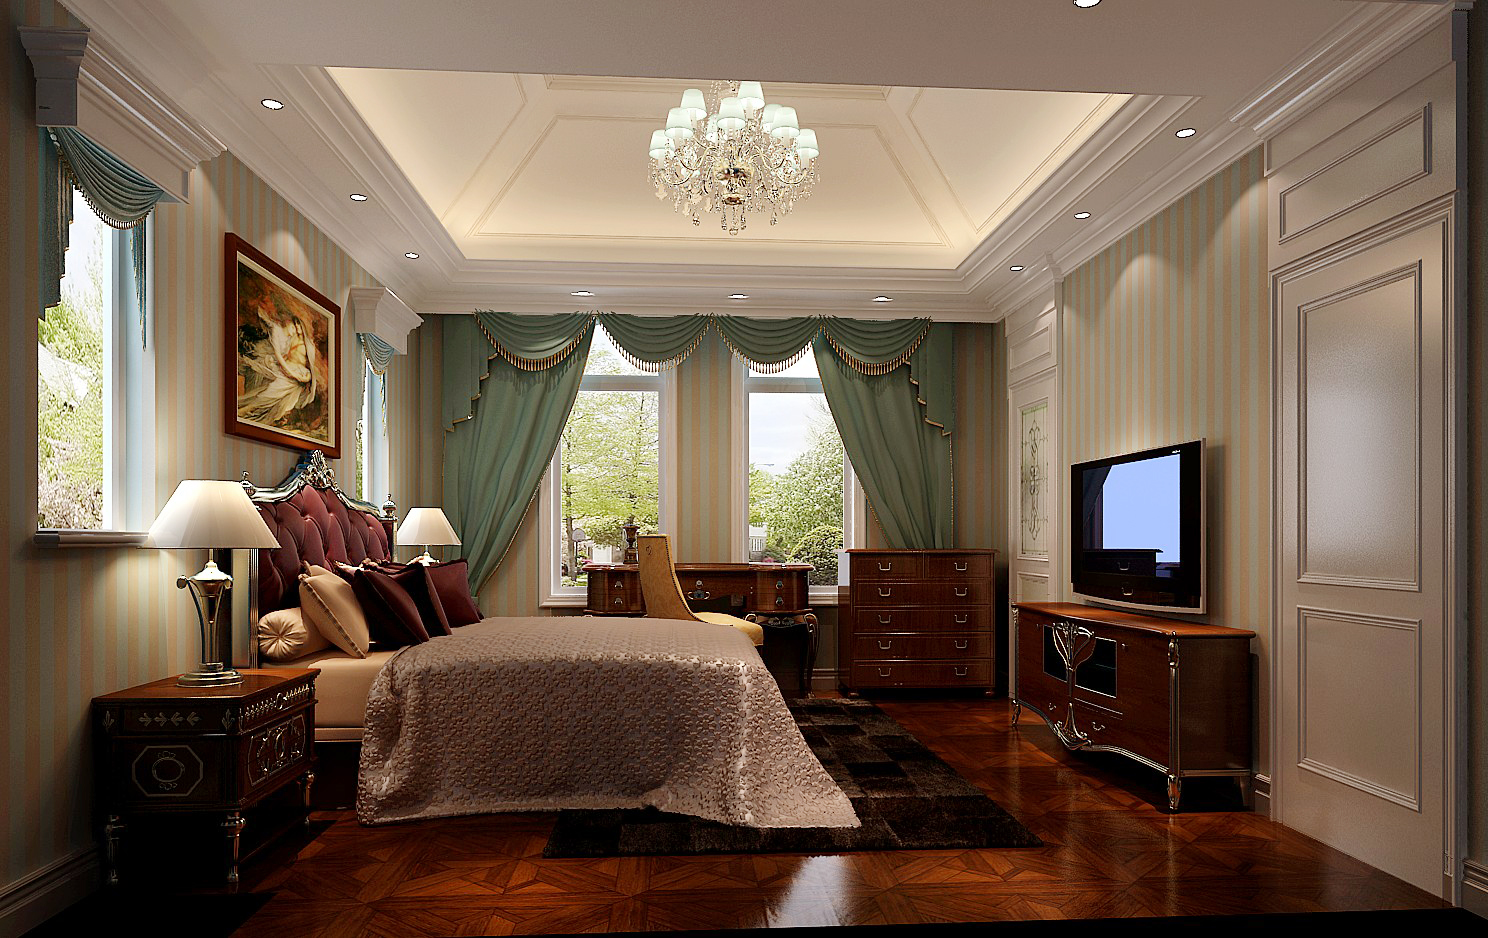 法式 混搭 别墅 白领 小资 80后 卧室图片来自沙漠雪雨在中海尚湖世家560平法式风格别墅的分享